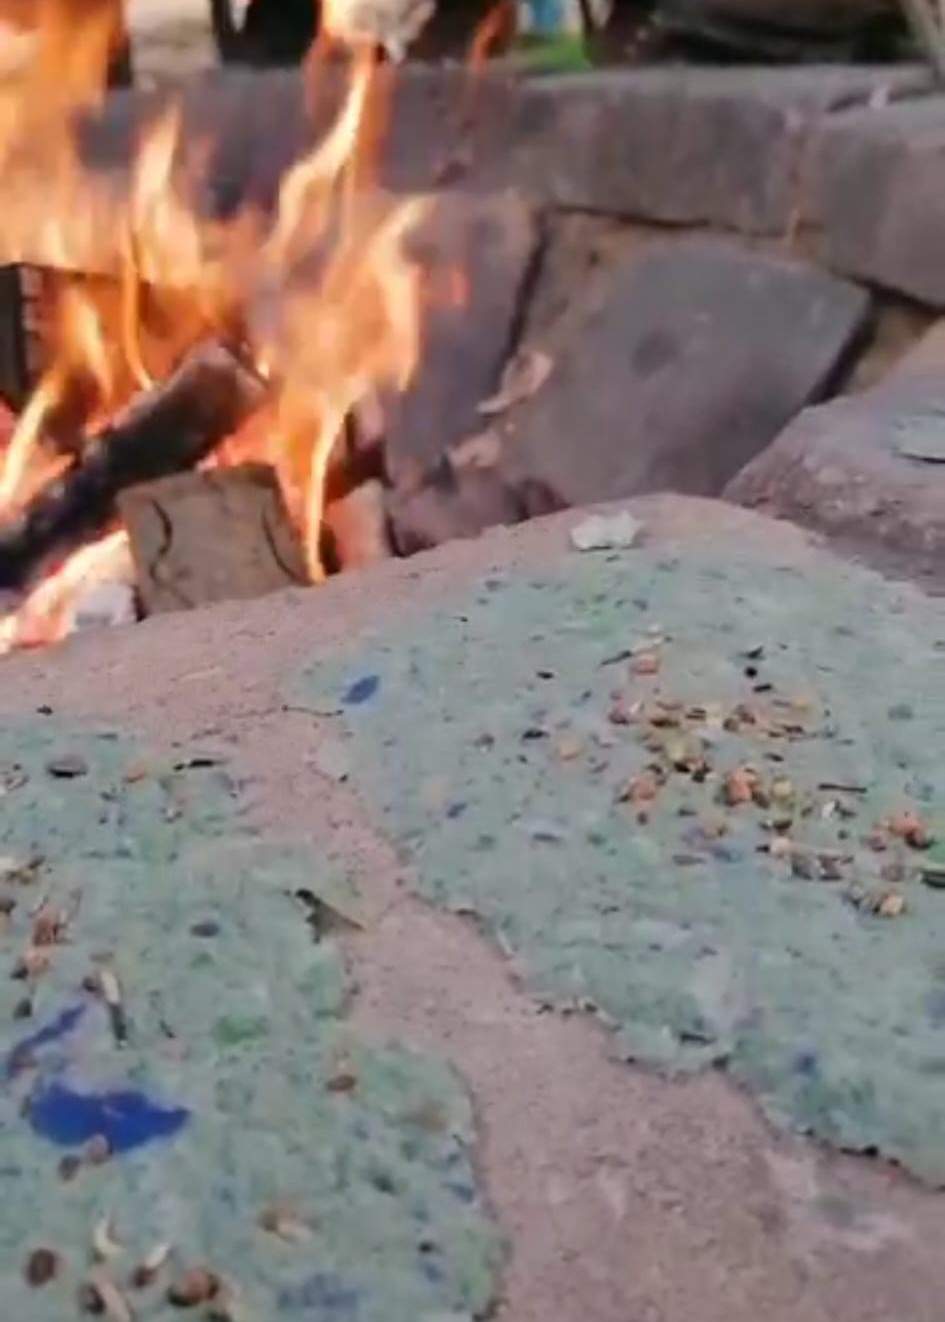 Nahaufnahme zwei Samenpapiere auf Stein liegend. Im Hintergrund brennt ein Lagerfeuer.